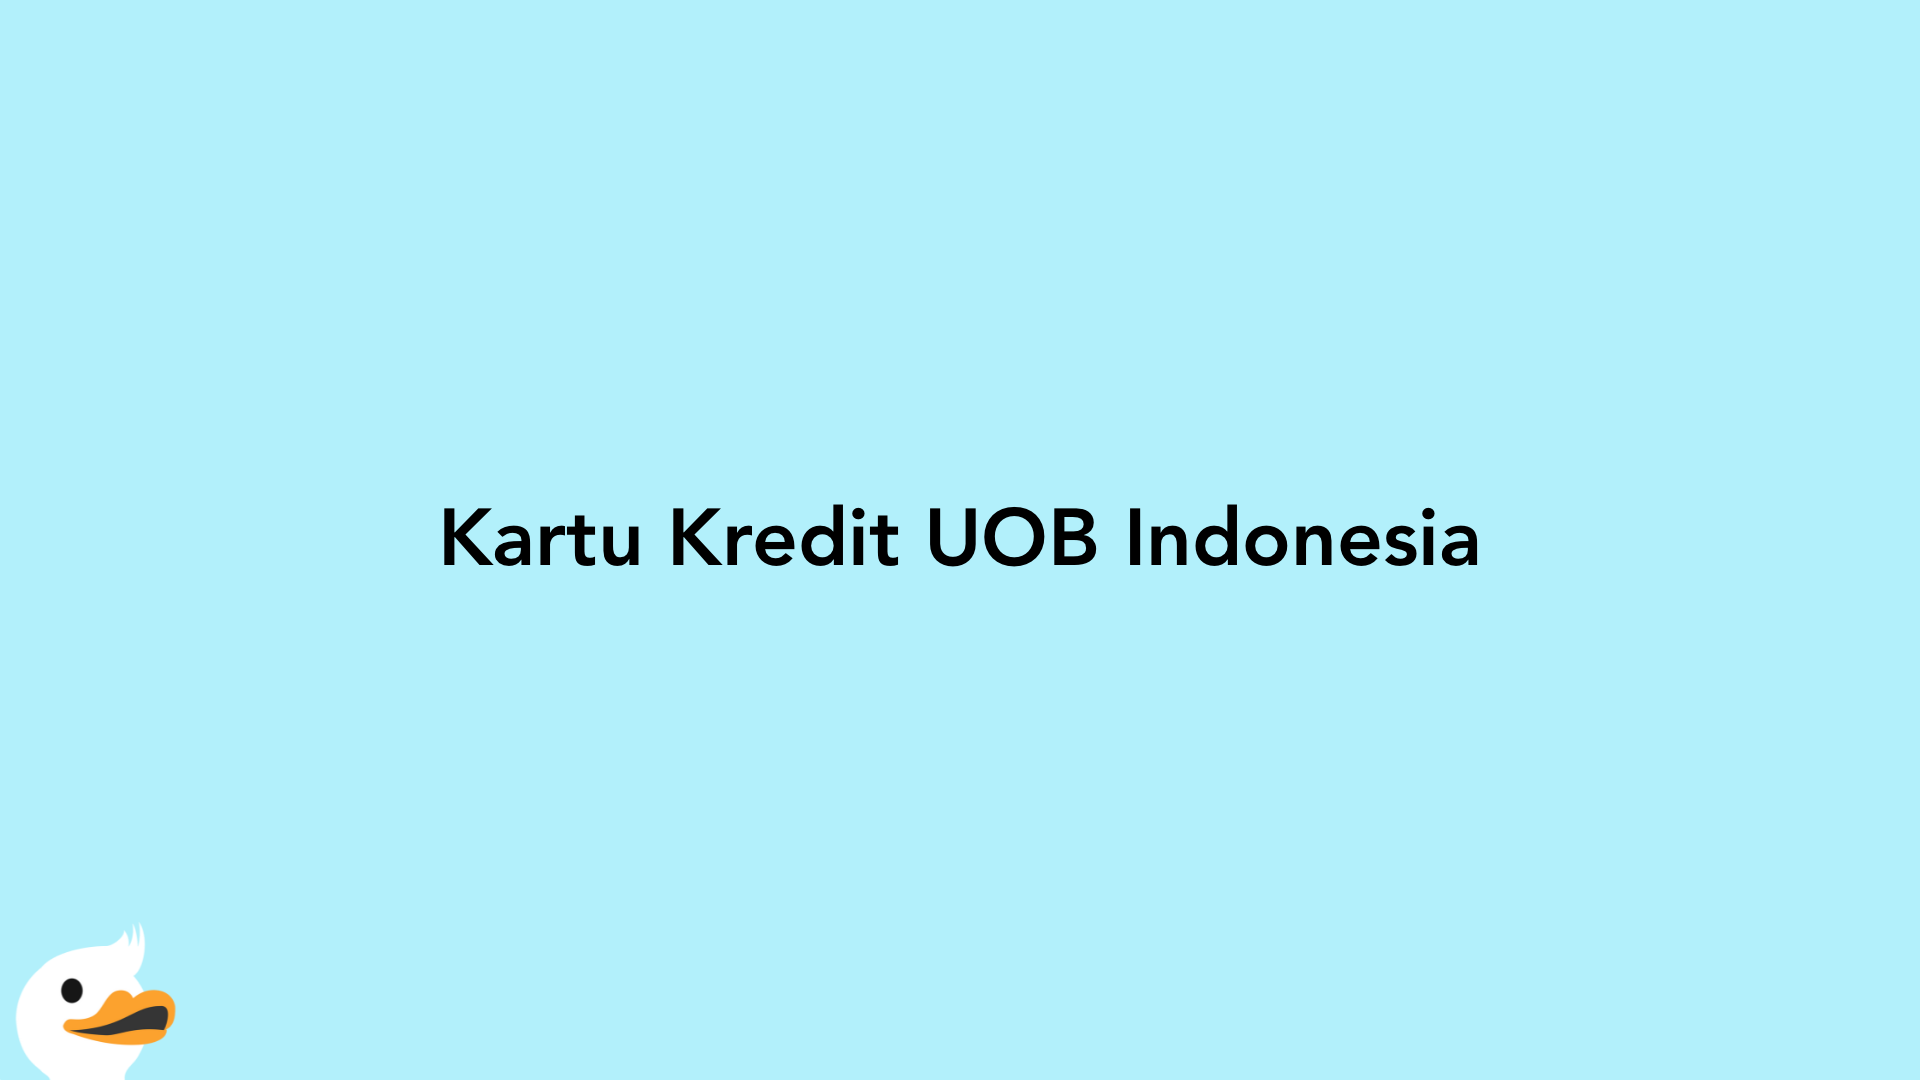 Kartu Kredit UOB Indonesia